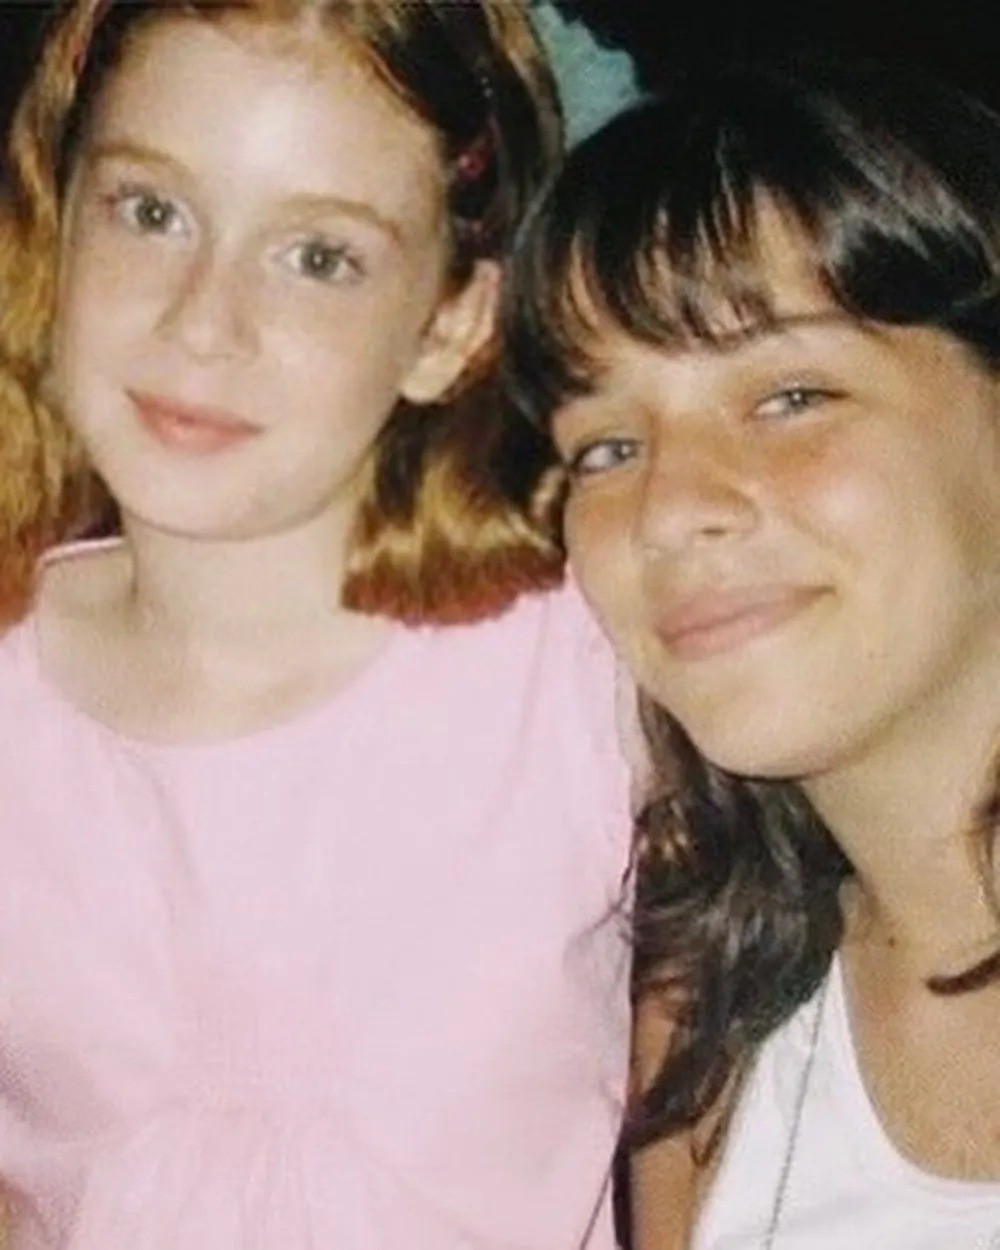    Marina Ruy Barbosa e Luma costa são amigas desde a infância. As duas se aproximaram quando contracenaram na novela “Começar de Novo”, em 2004 — Foto: Reprodução